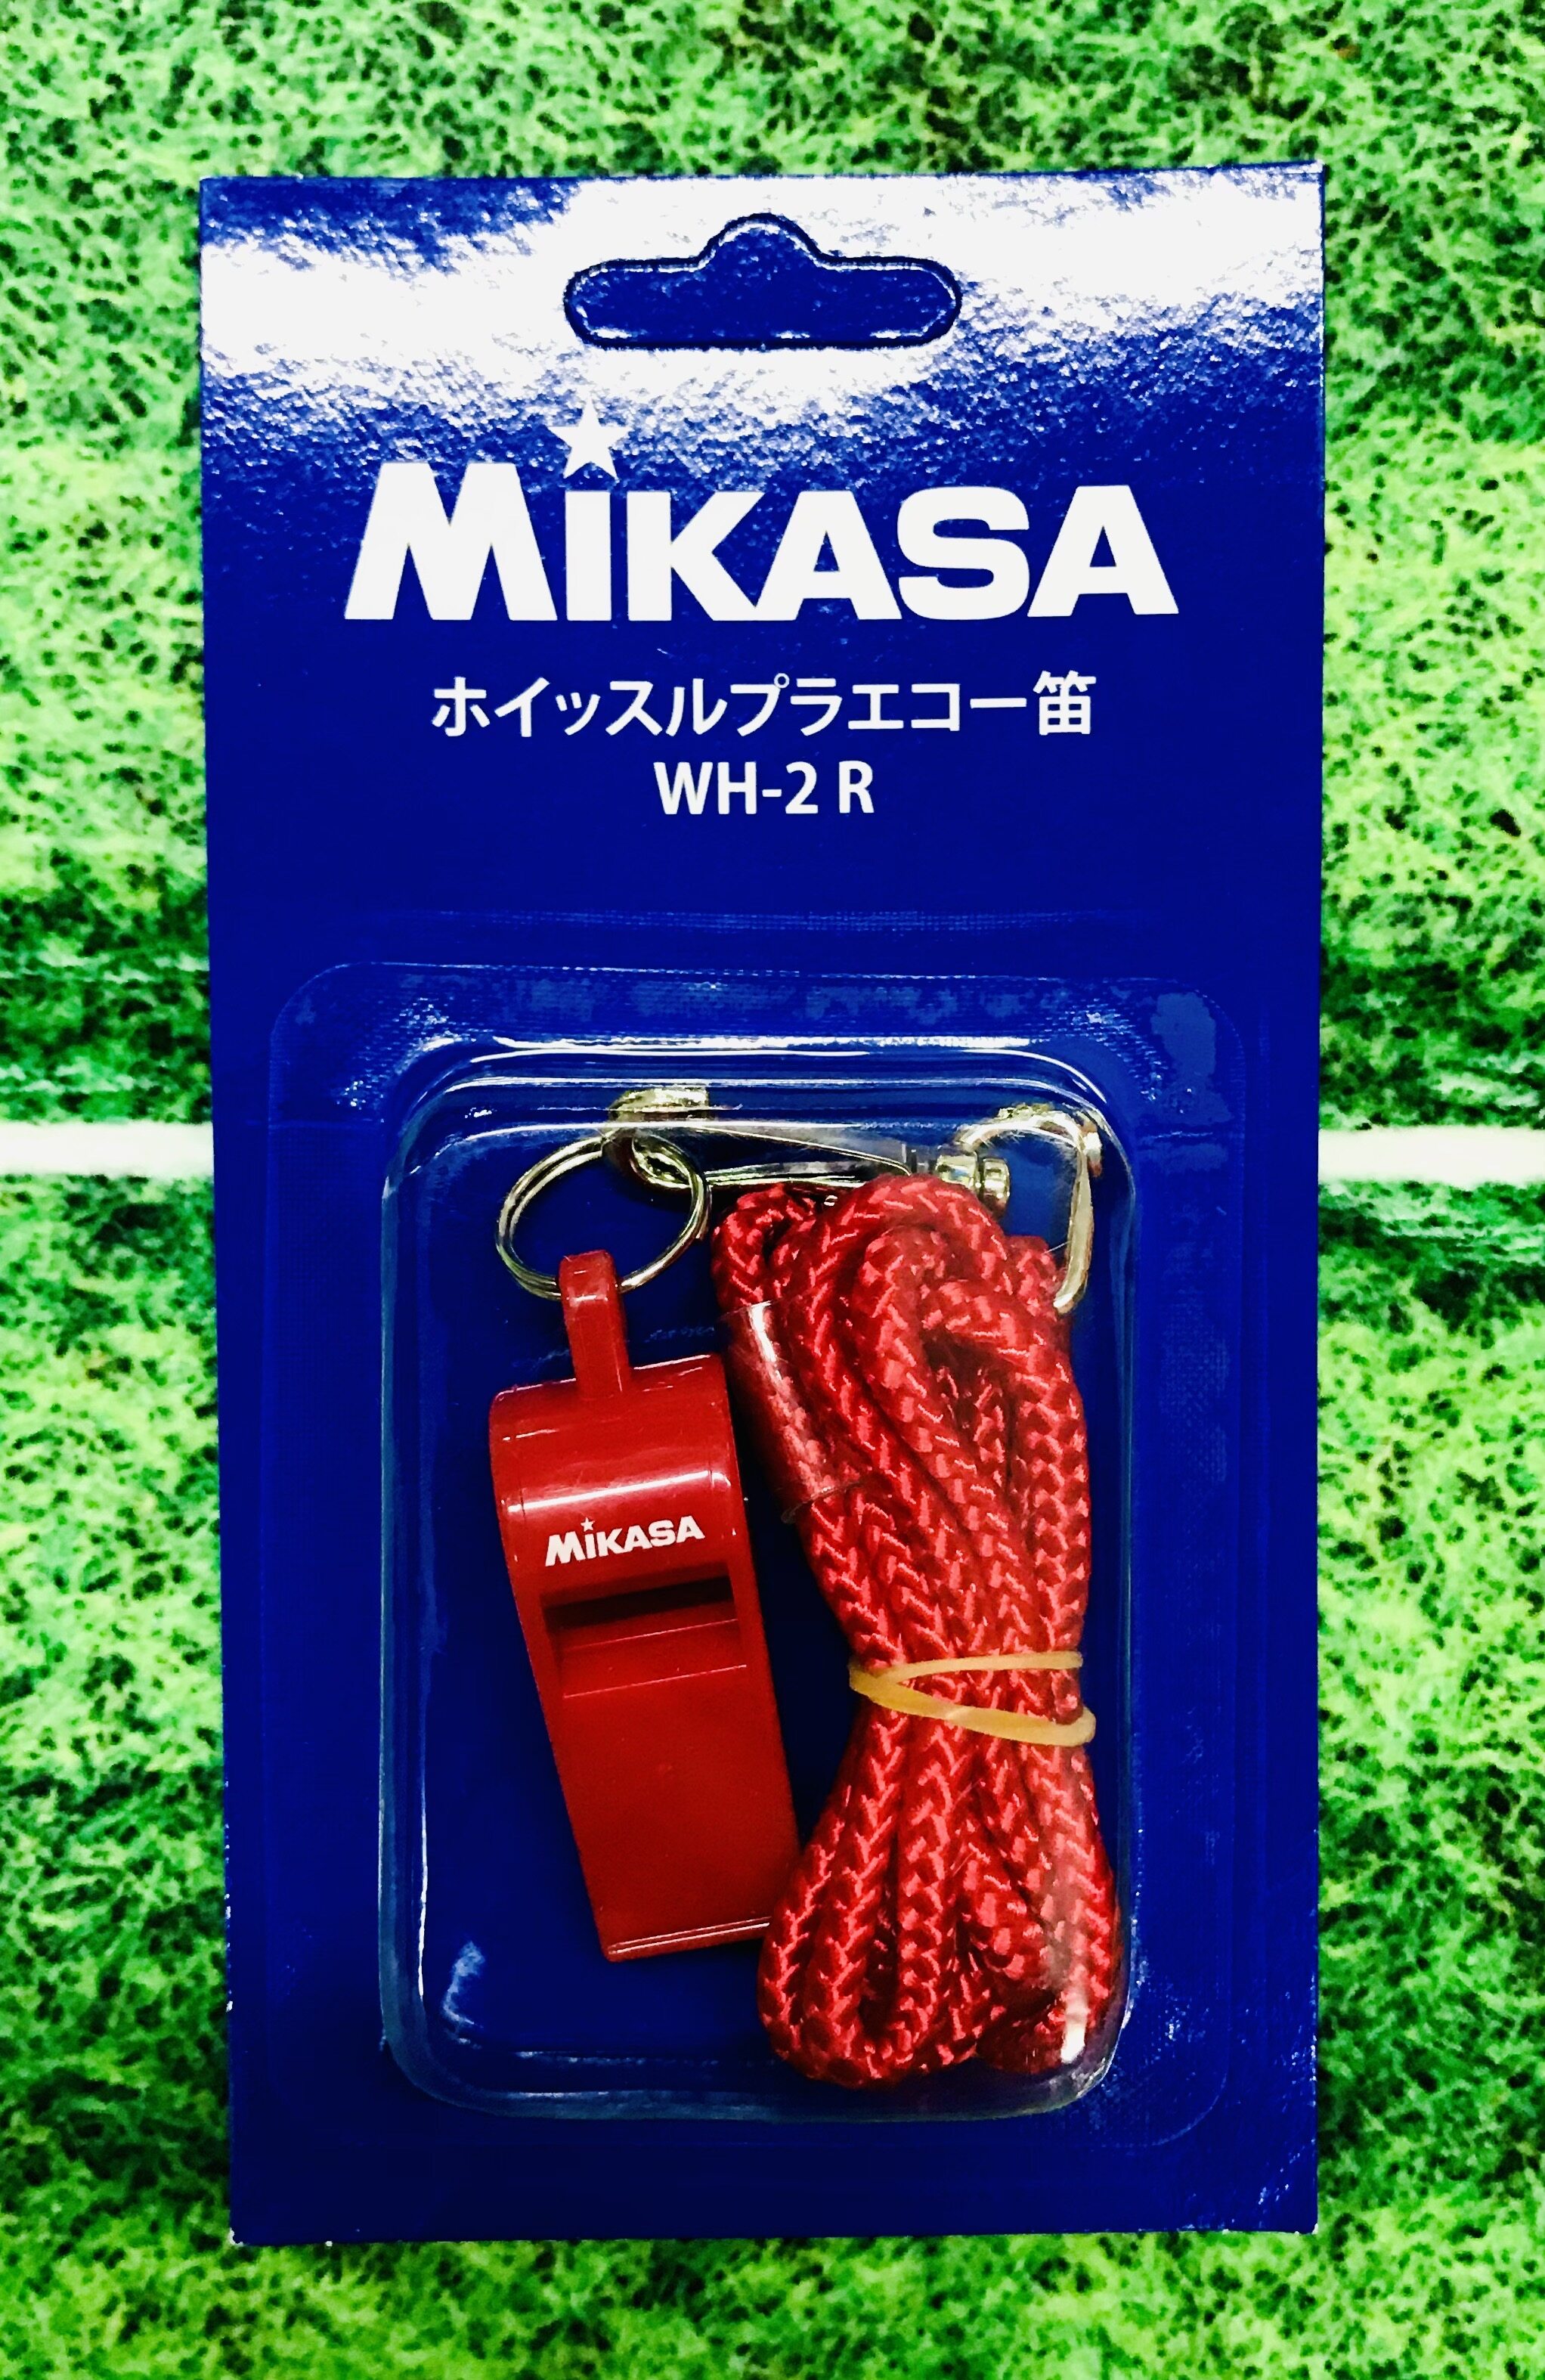 MIKASA นกหวีดผู้ตัดสิน มิกาซ่า รุ่น WH2 Referee Whistle +มาพร้อมสายคล้องคอ